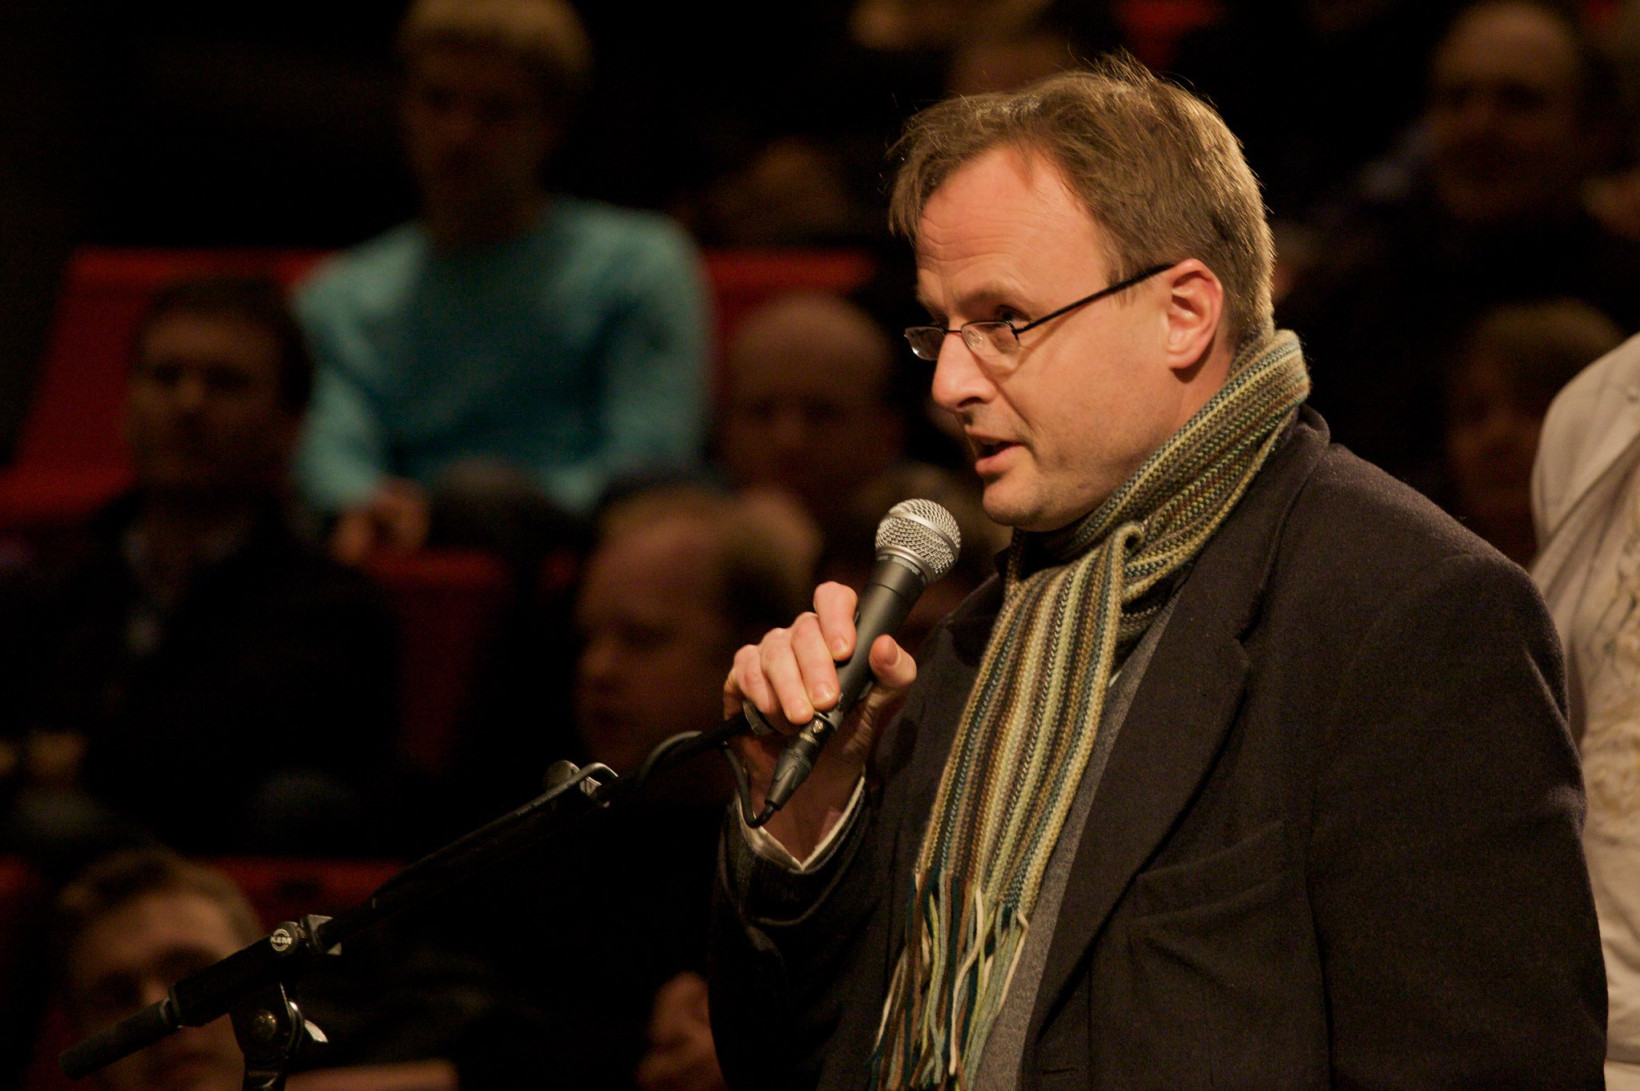 Former Opera CTO Håkon Wium Lie